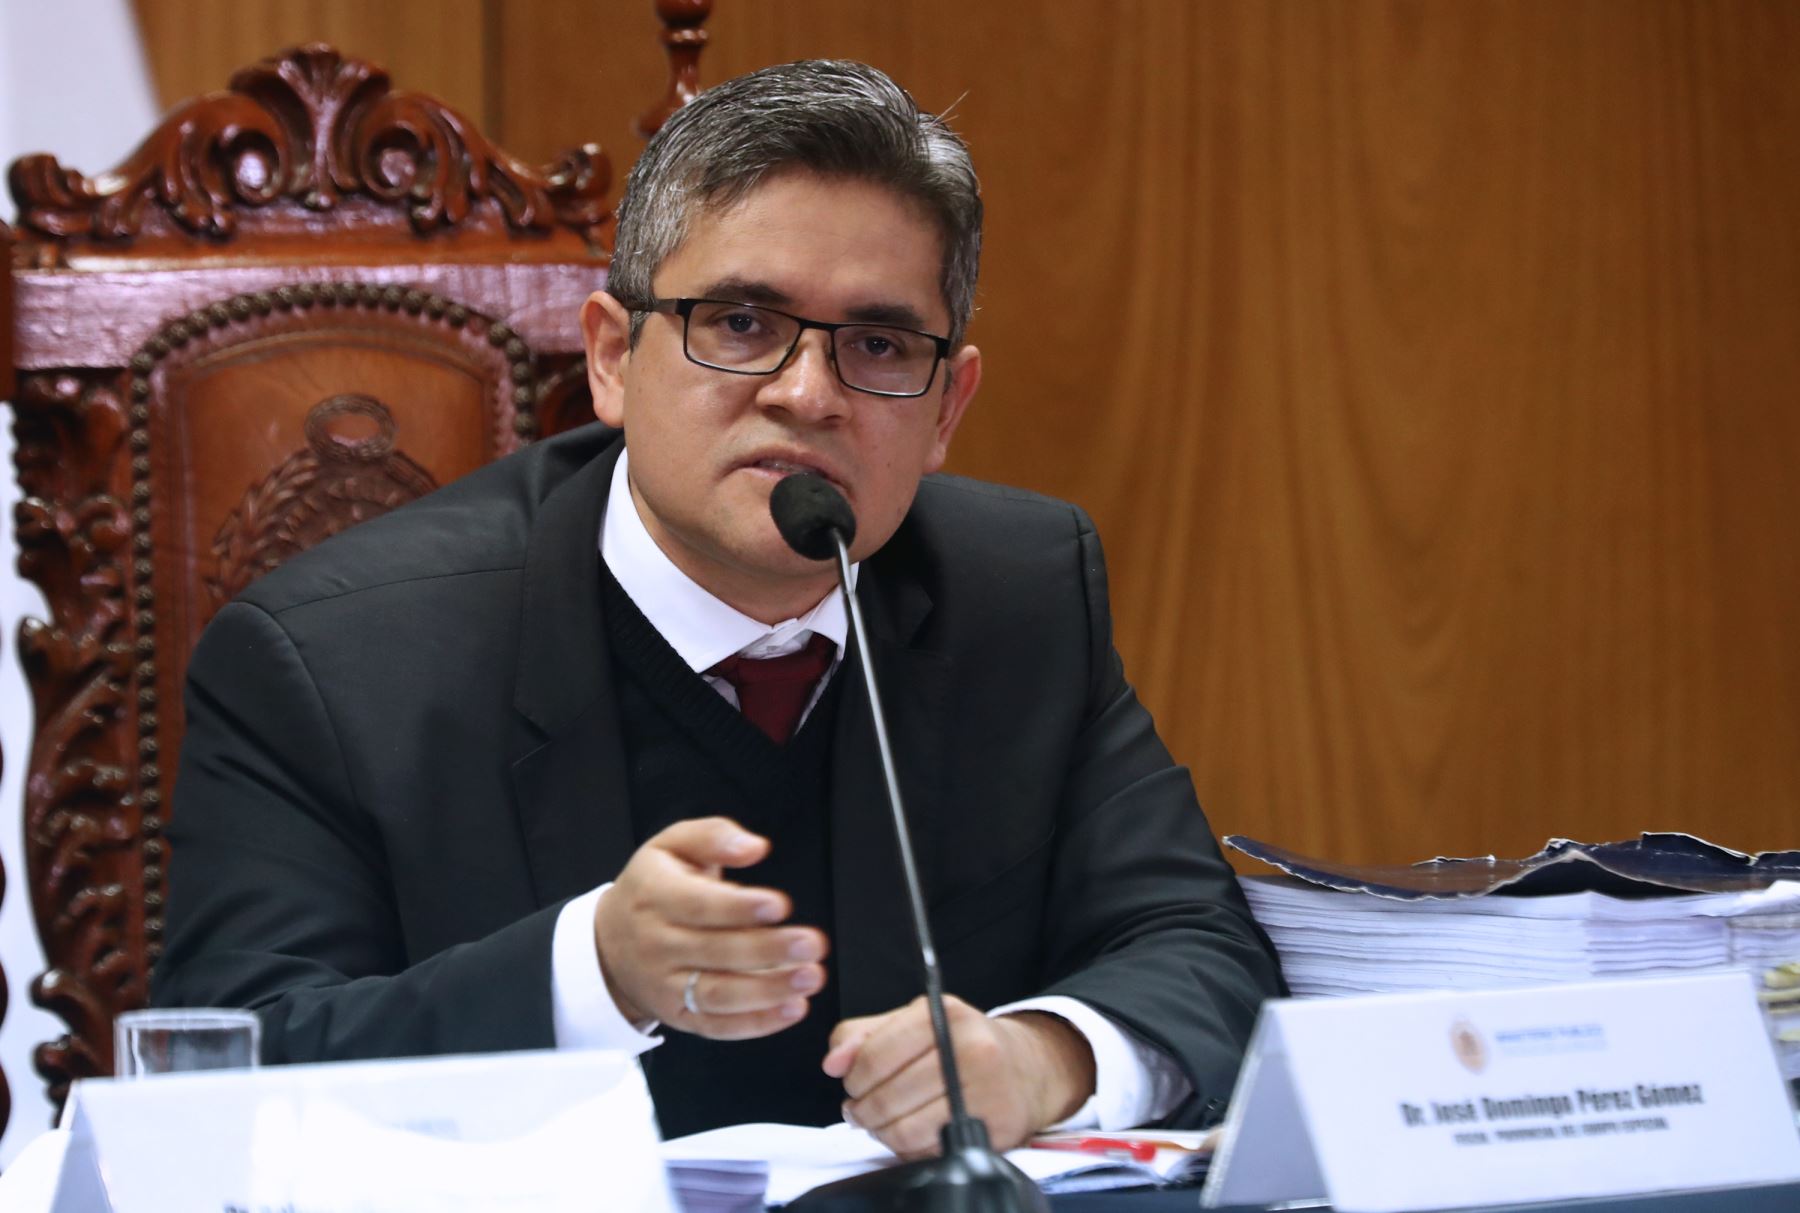 Domingo Pérez: este proyecto de ley como está redactado lo único que favorece es al crimen”